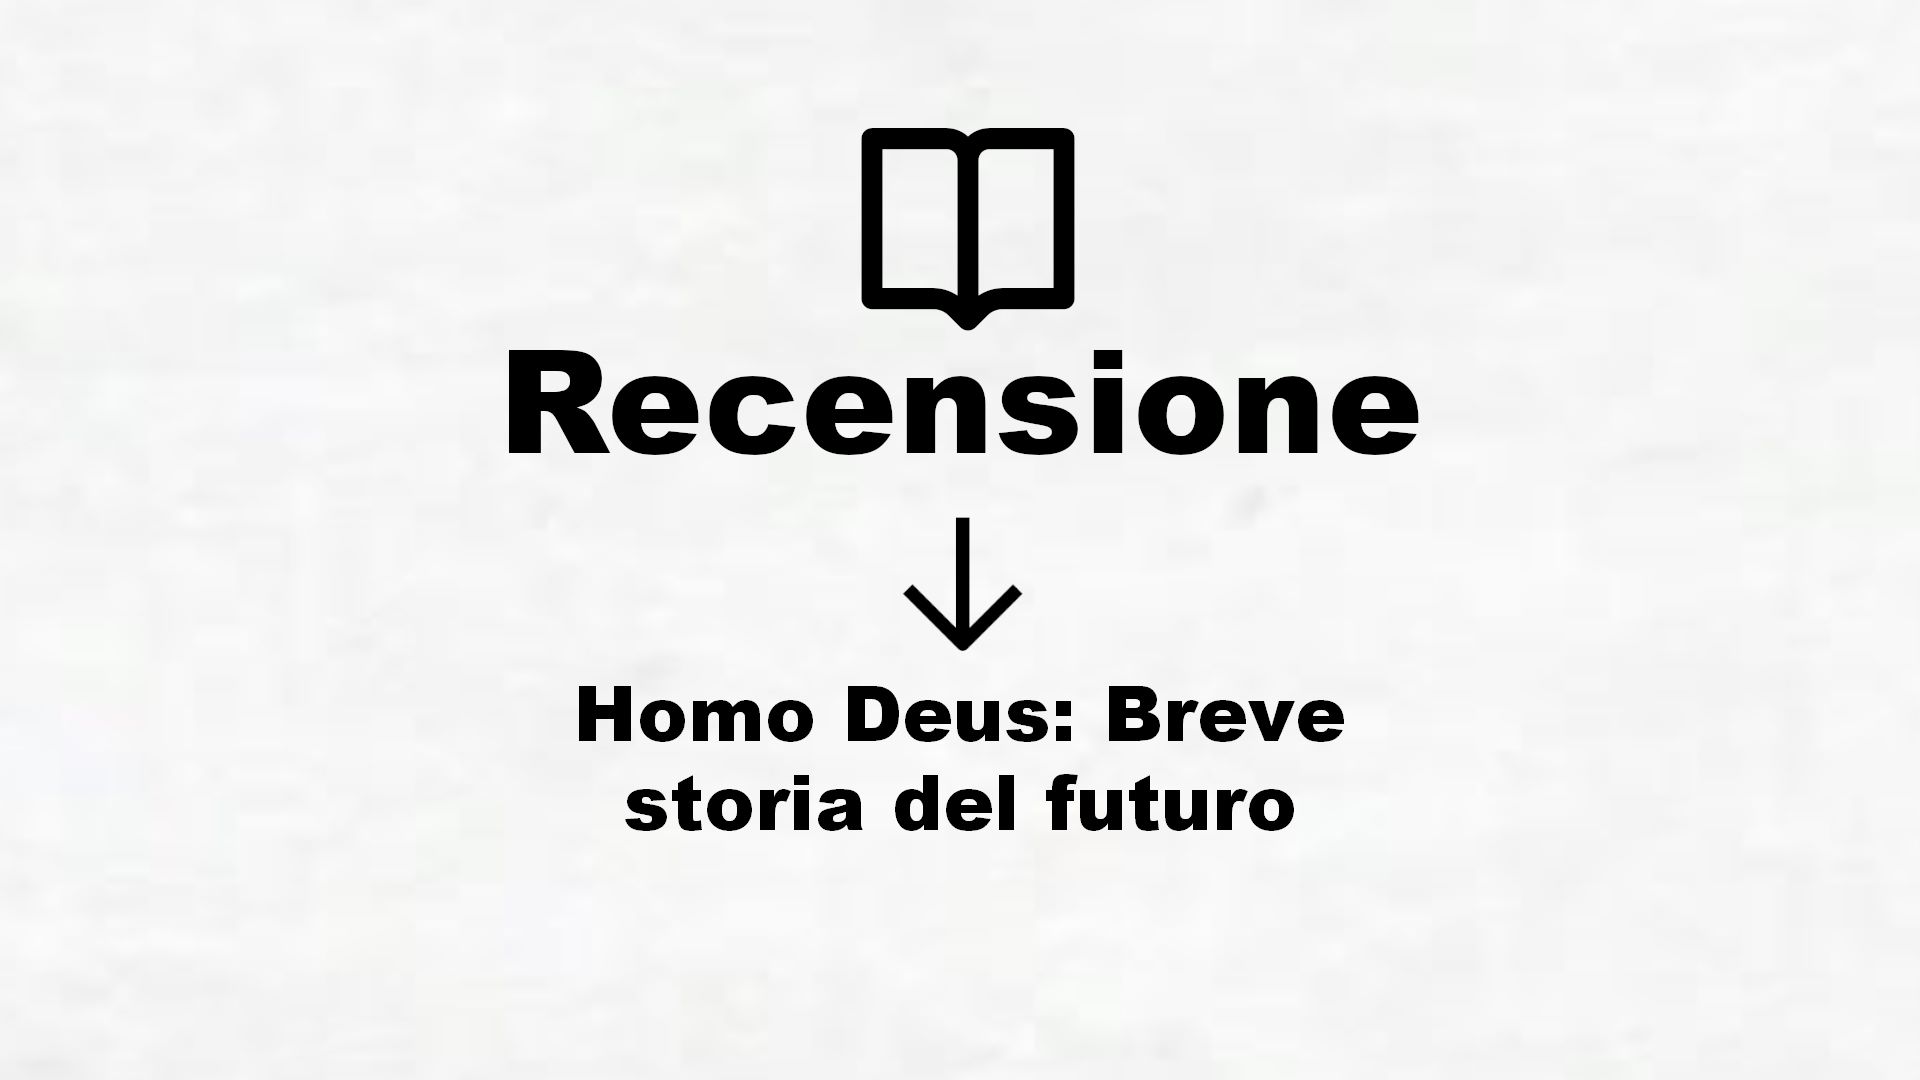 Homo Deus: Breve storia del futuro – Recensione Libro